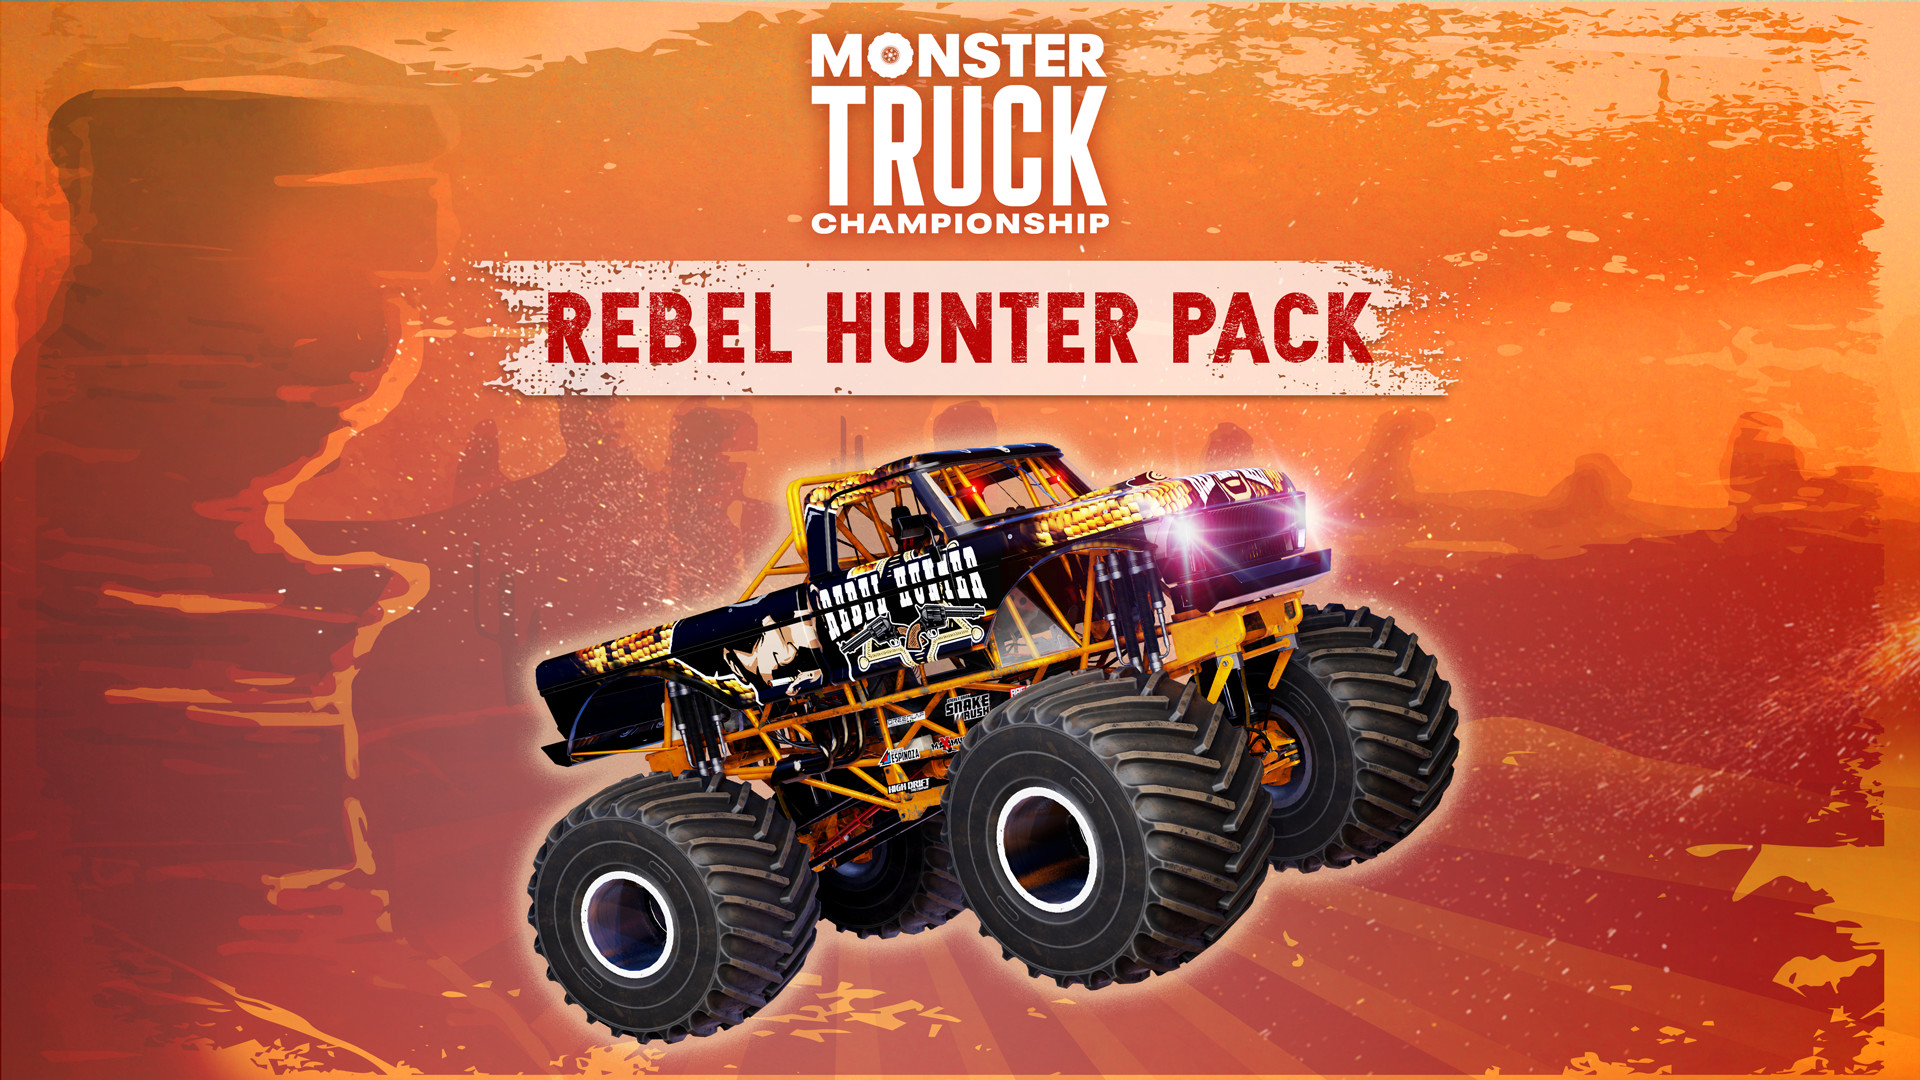 Monster Truck Championship - Rebel Hunter Pack DLC Steam CD Key 10.16$